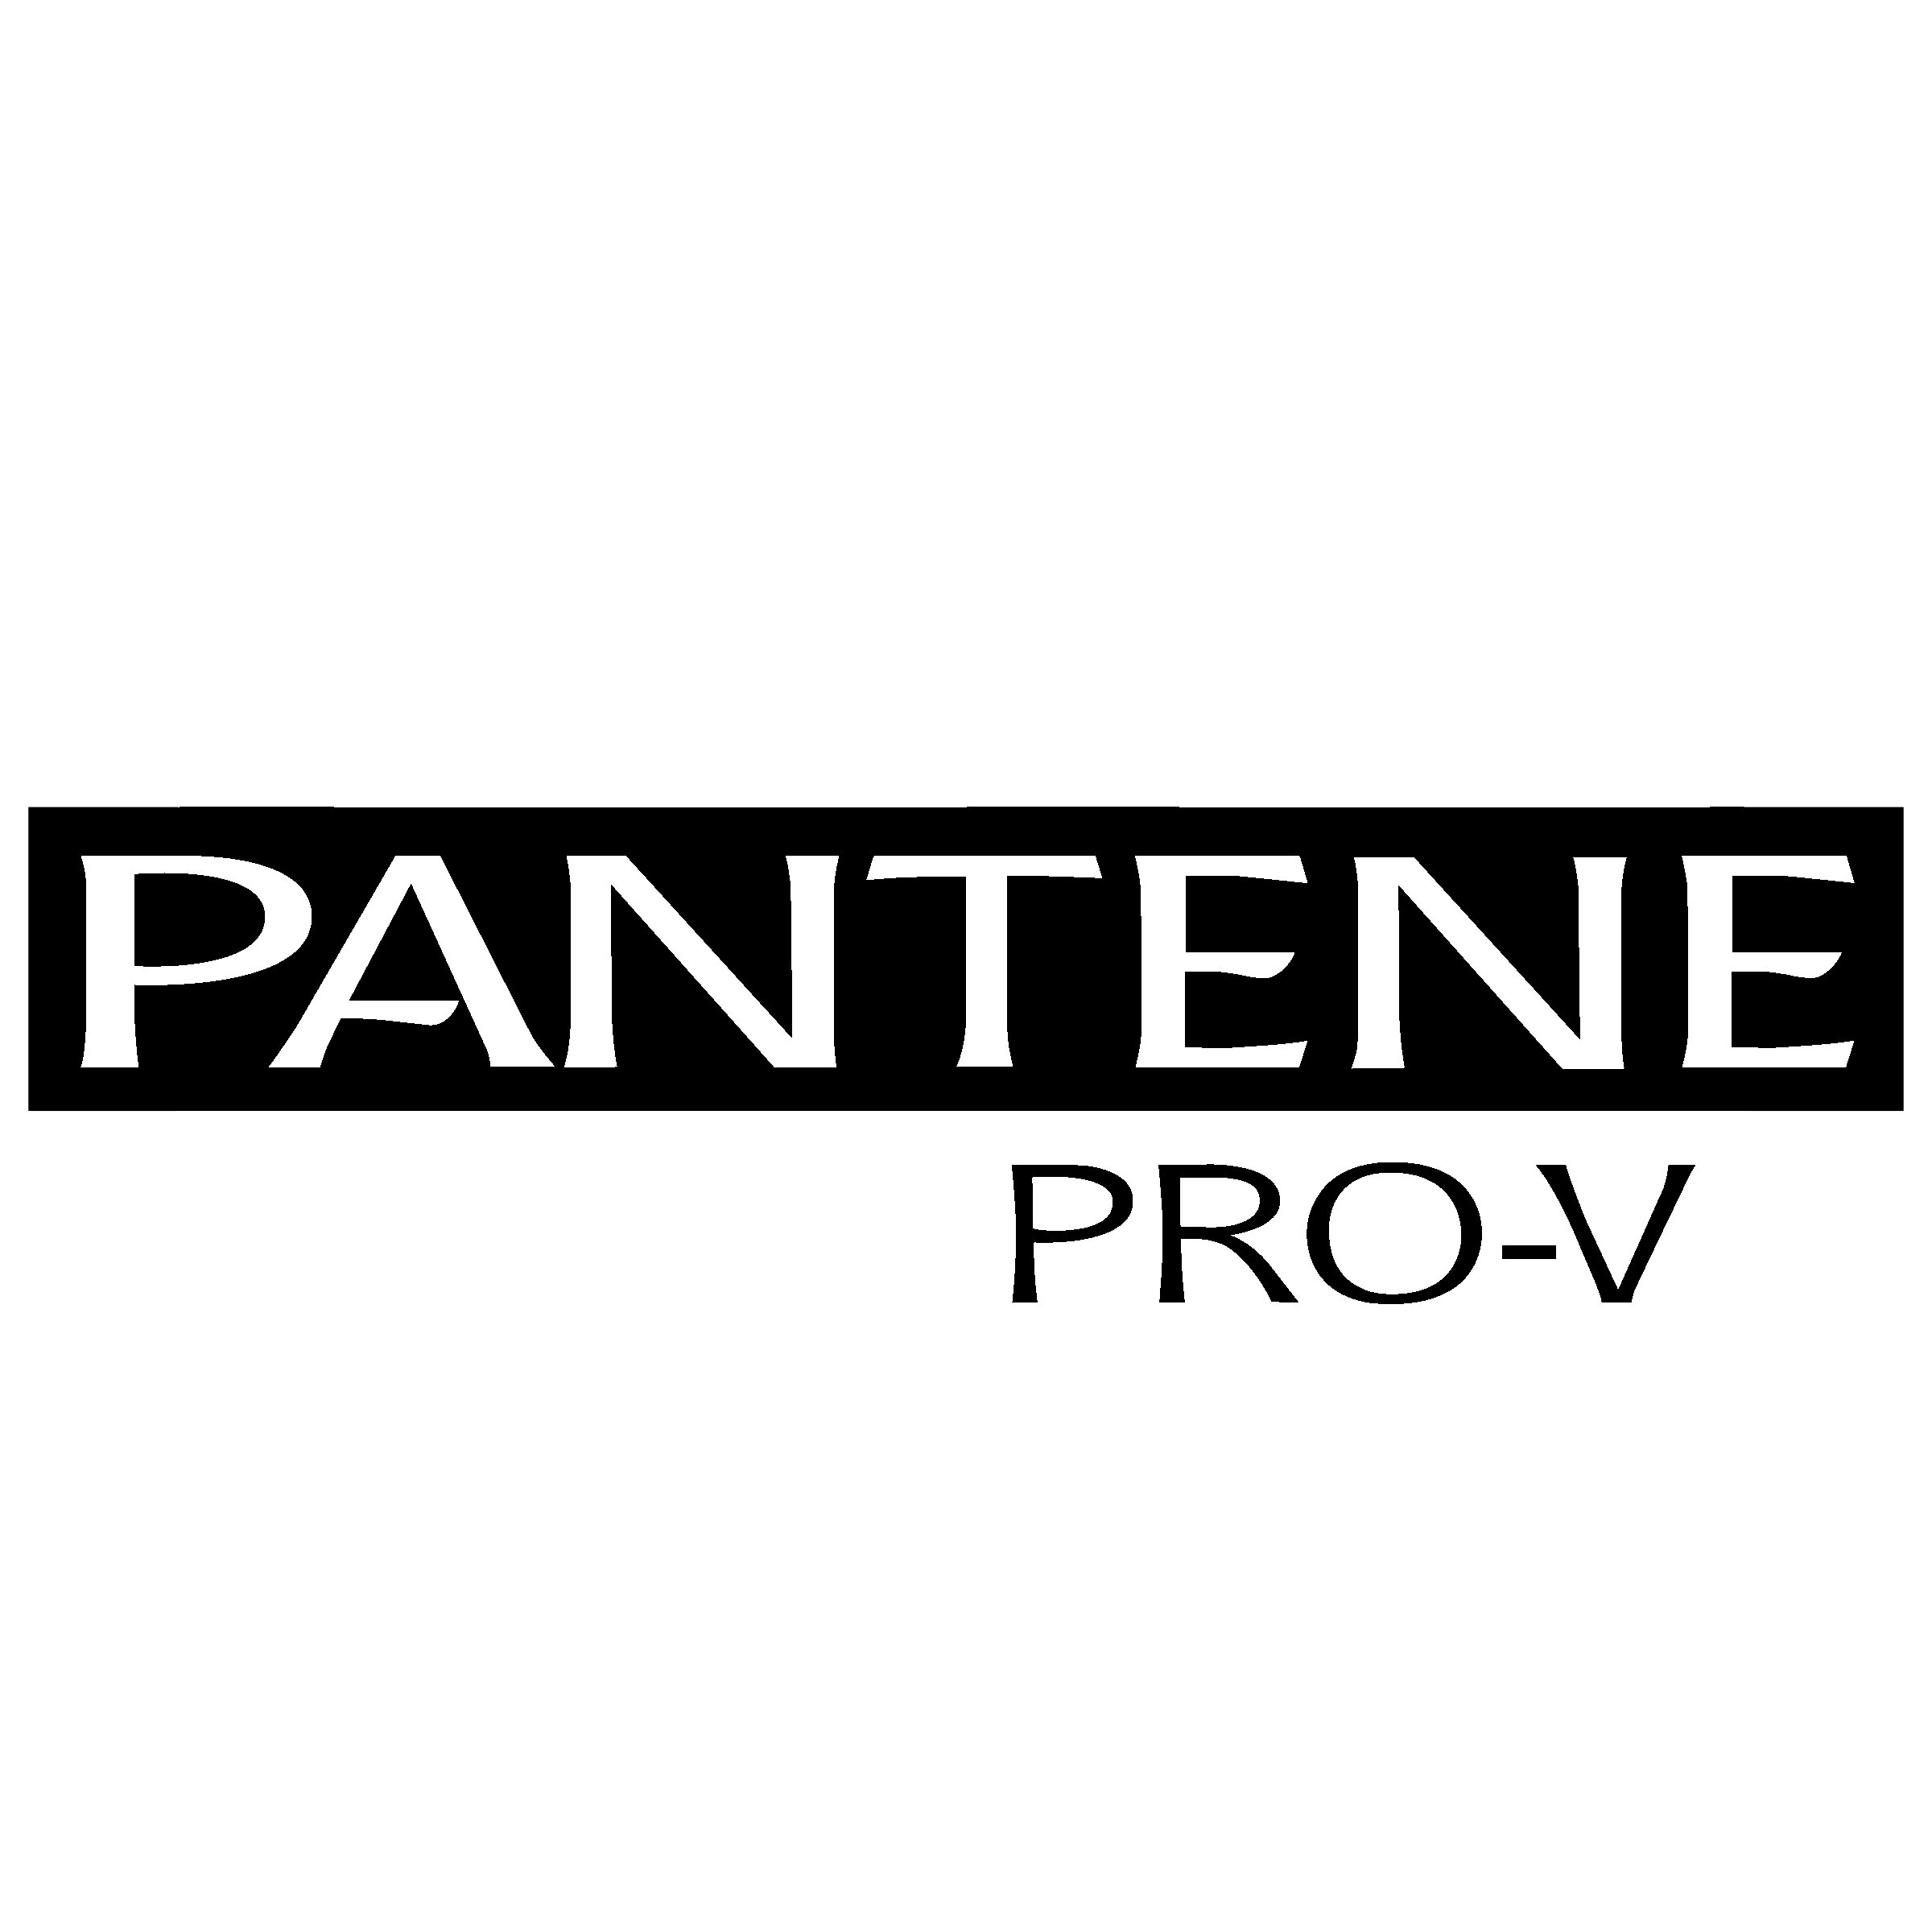 Pantene Pro V Logo PNG Transparent & SVG Vector.